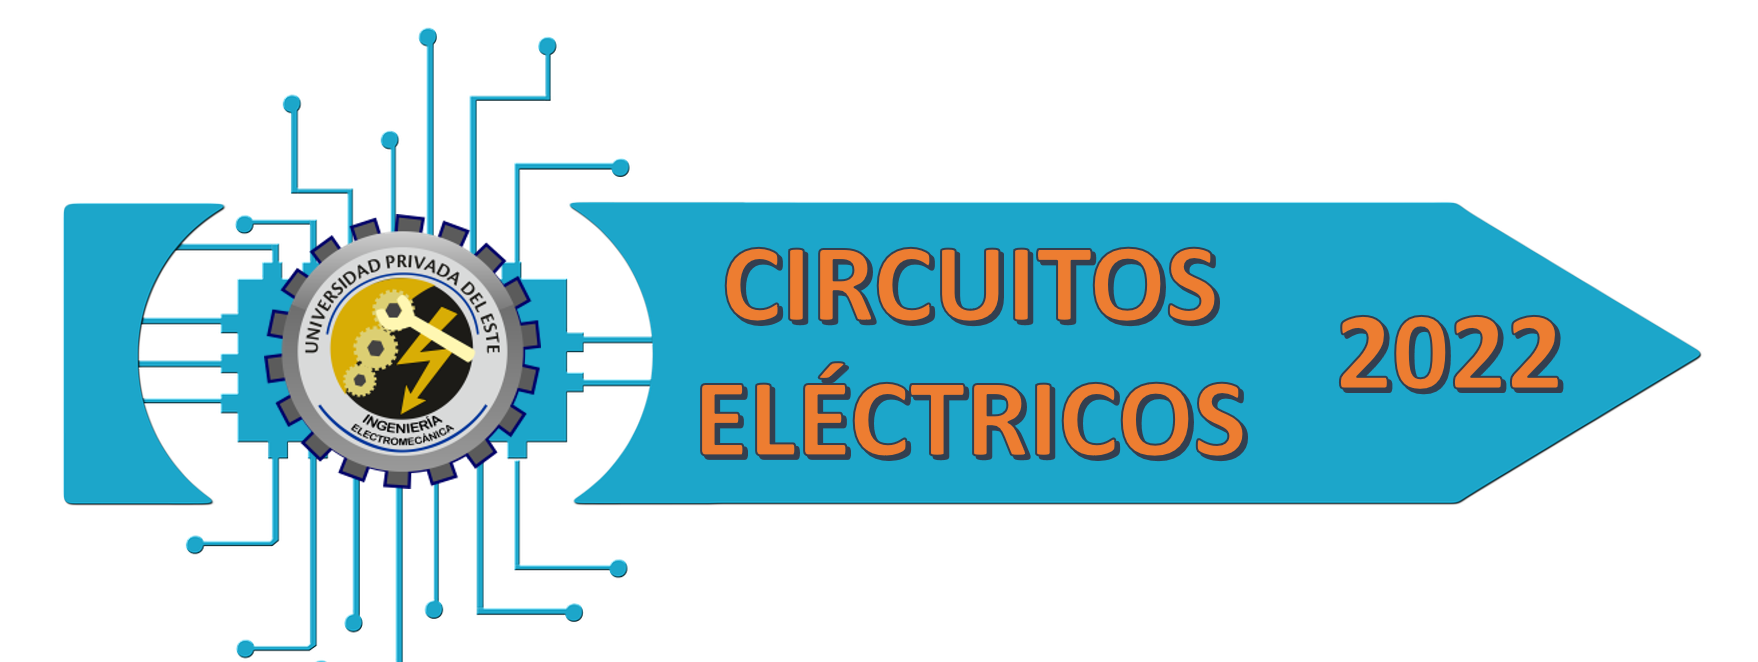 Course Image [2022] CIRCUITOS ELECTRICOS I